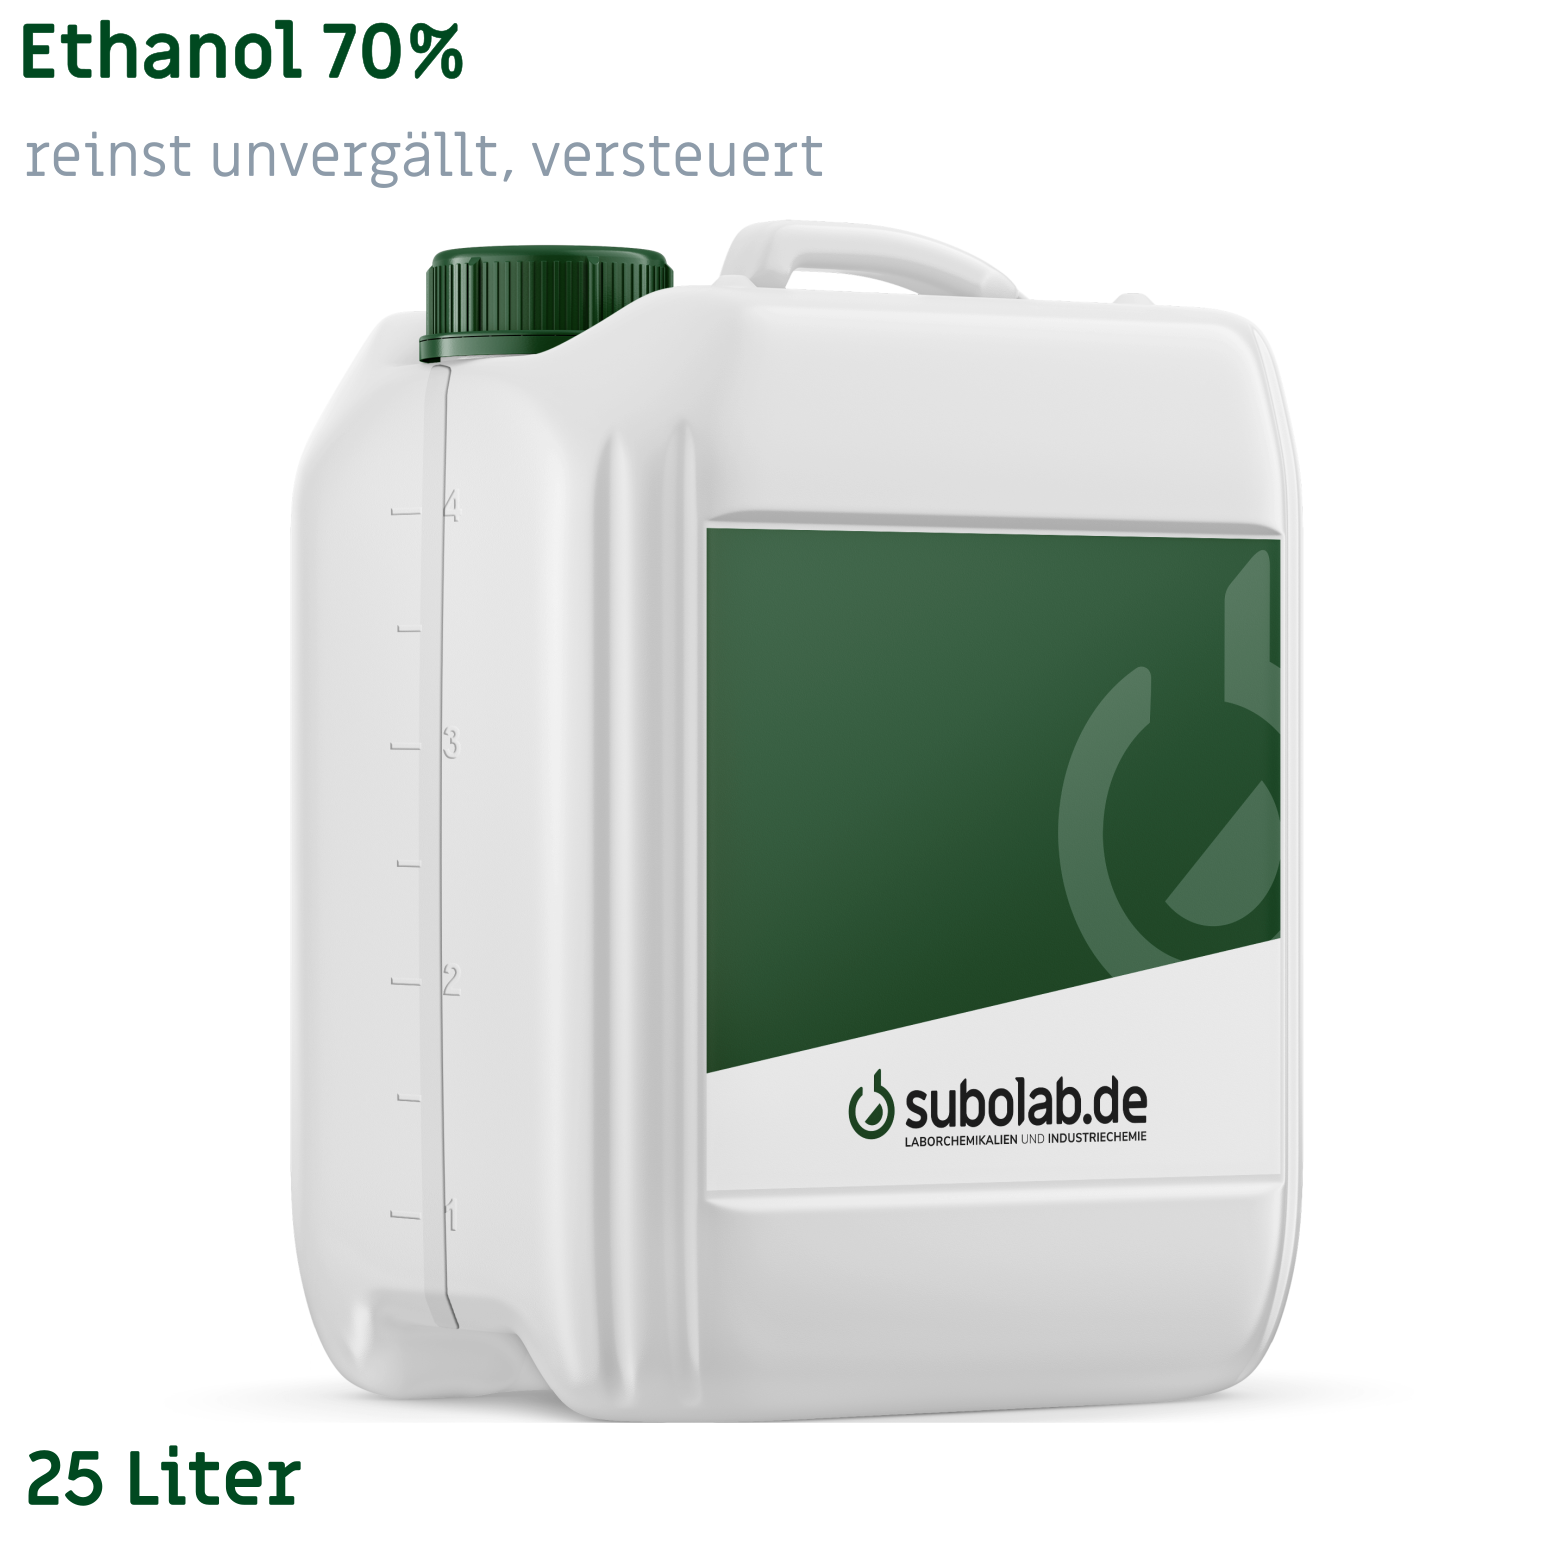 Bild von Ethanol 70% reinst unvergällt, versteuert (25 Liter)